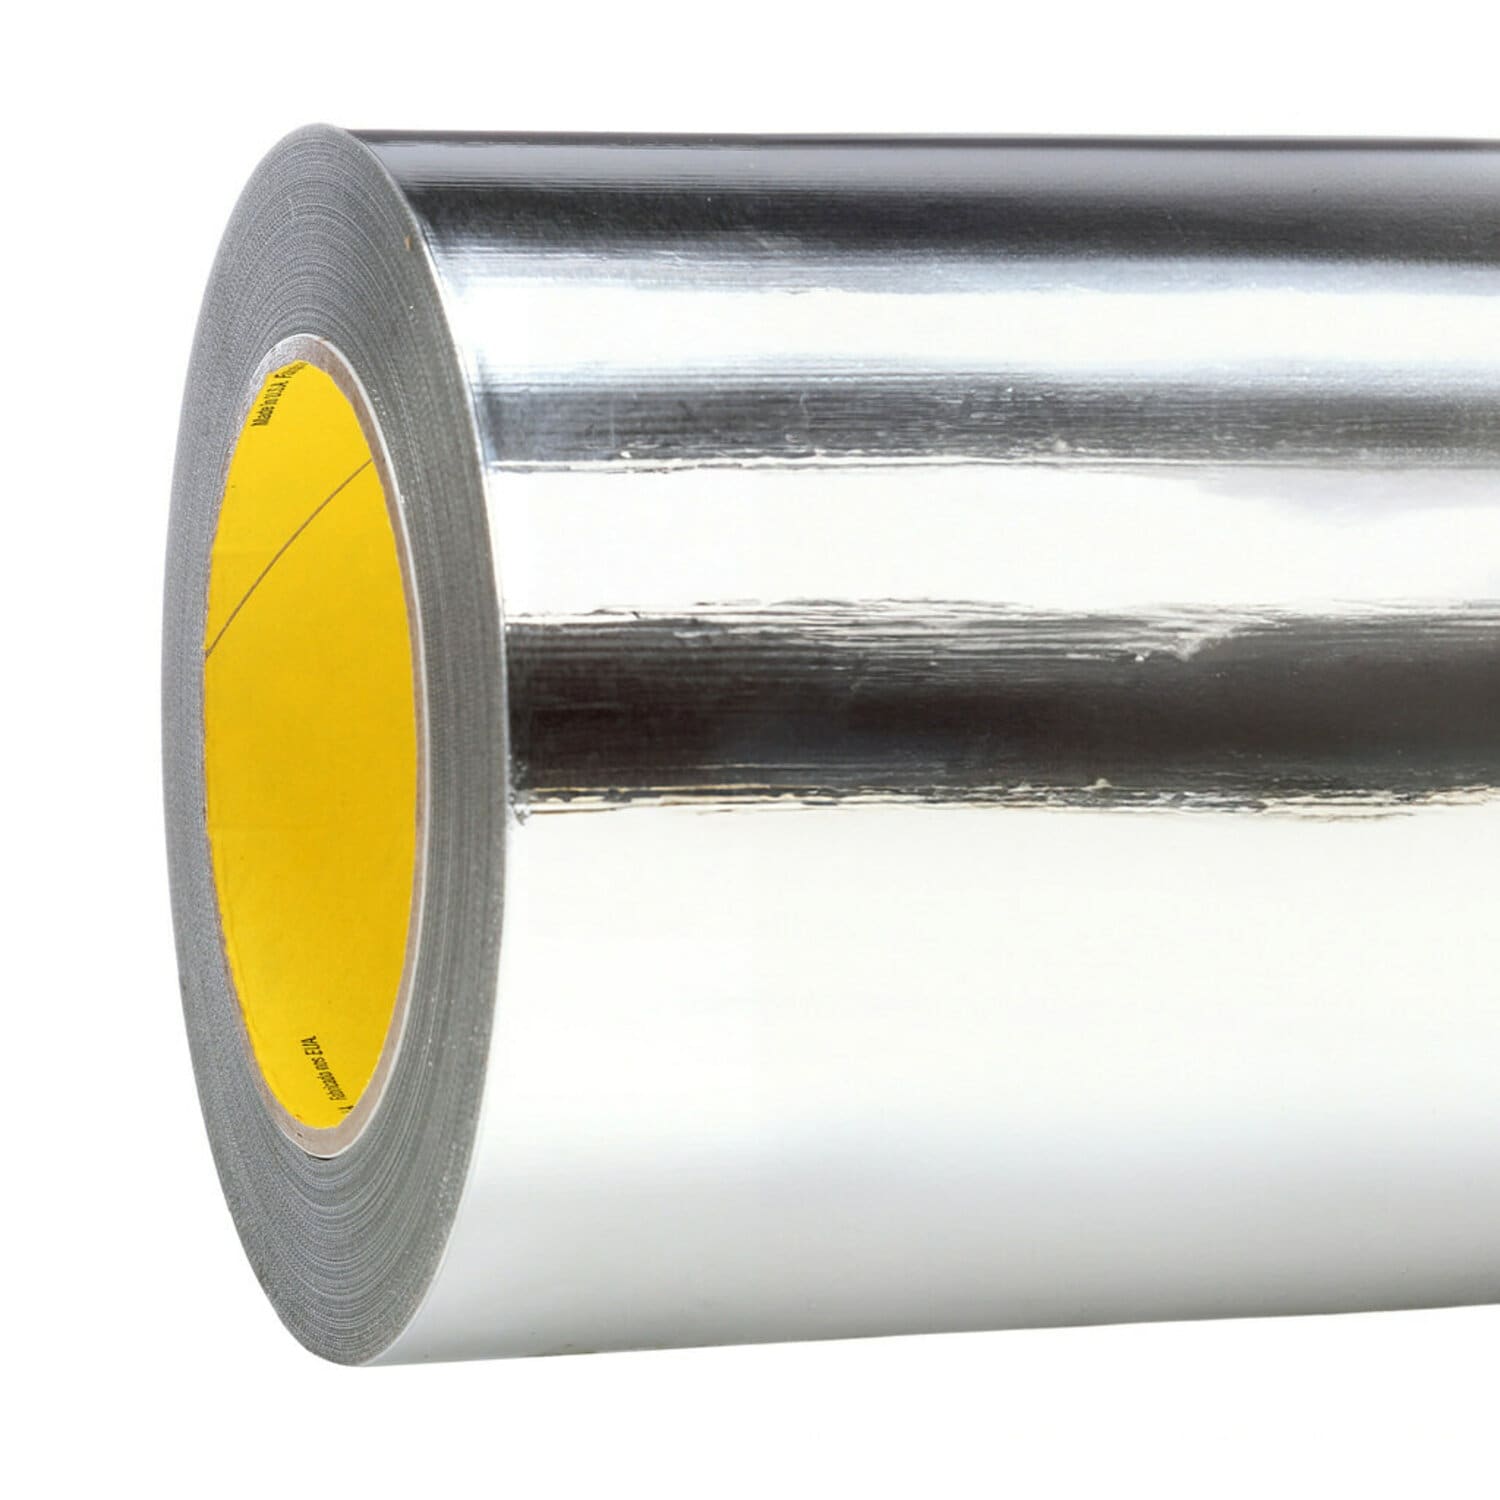 7010302890 - 3M Aluminum Foil Tape 427, Silver, 19 in x 60 yd, 4.6 mil, 1 roll per
case